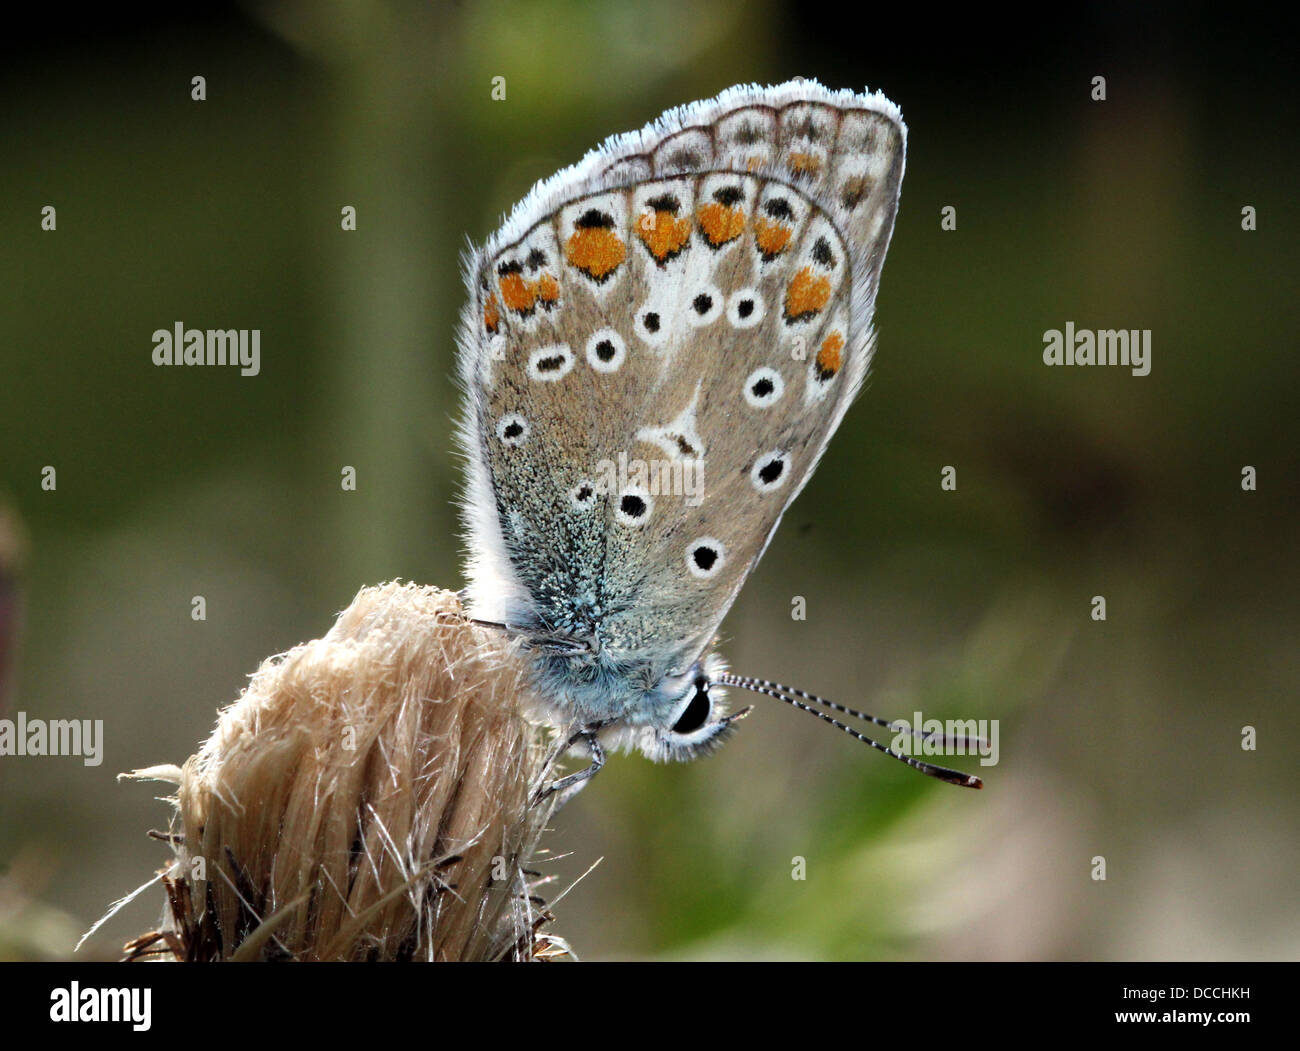 Detallada imagen macro de una hembra azul común (Polyommatus icarus) butterfly Foto de stock